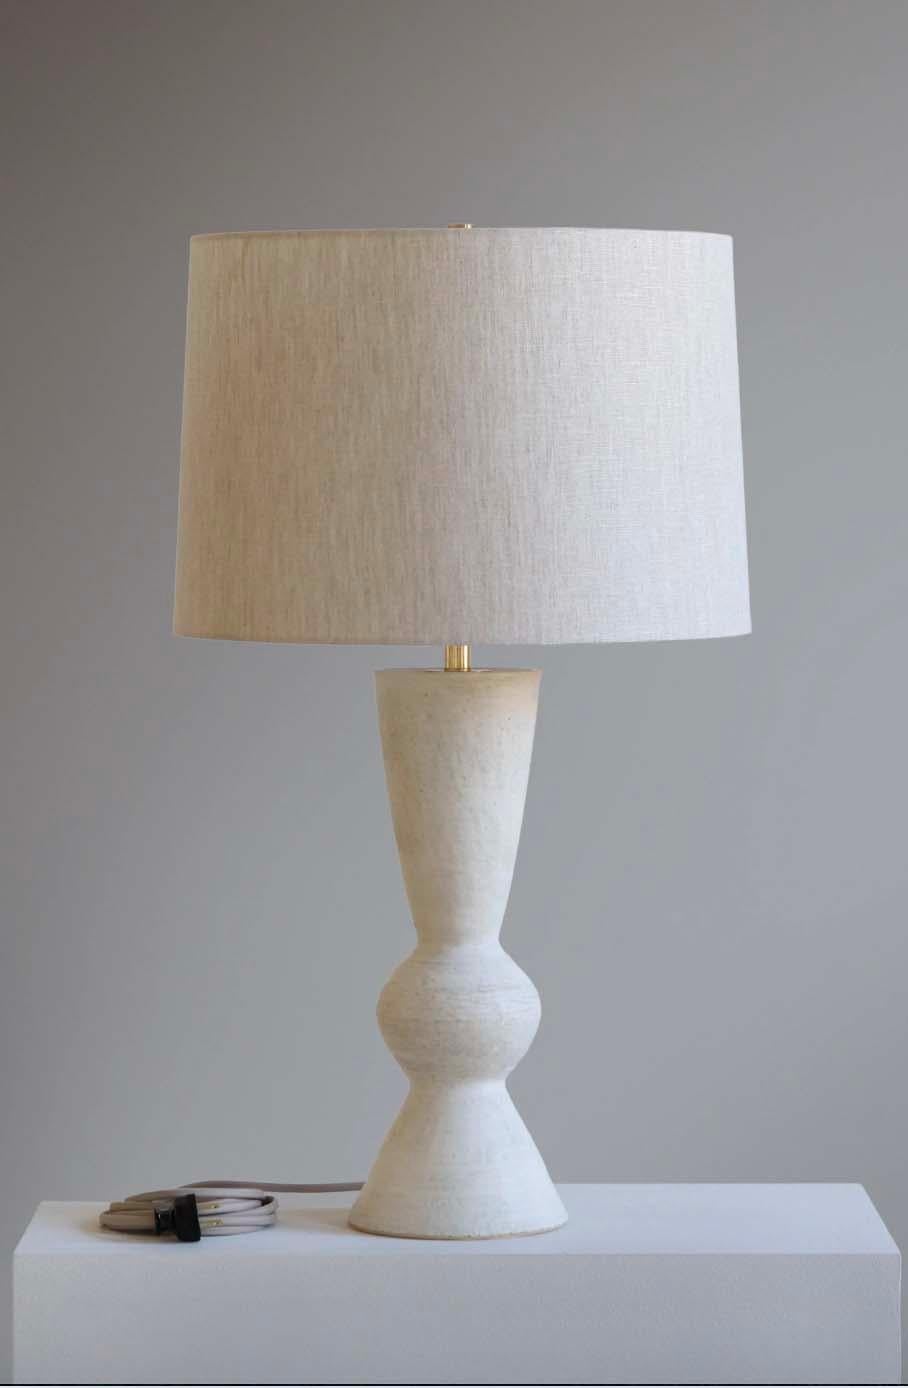 Die Octavius-Lampe ist eine handgefertigte Studiotöpferei des Keramikkünstlers Danny Kaplan. Inklusive Lampenschirm. Bitte beachten Sie, dass die genauen Abmessungen variieren können.

Geboren in New York City und aufgewachsen in Aix-en-Provence,